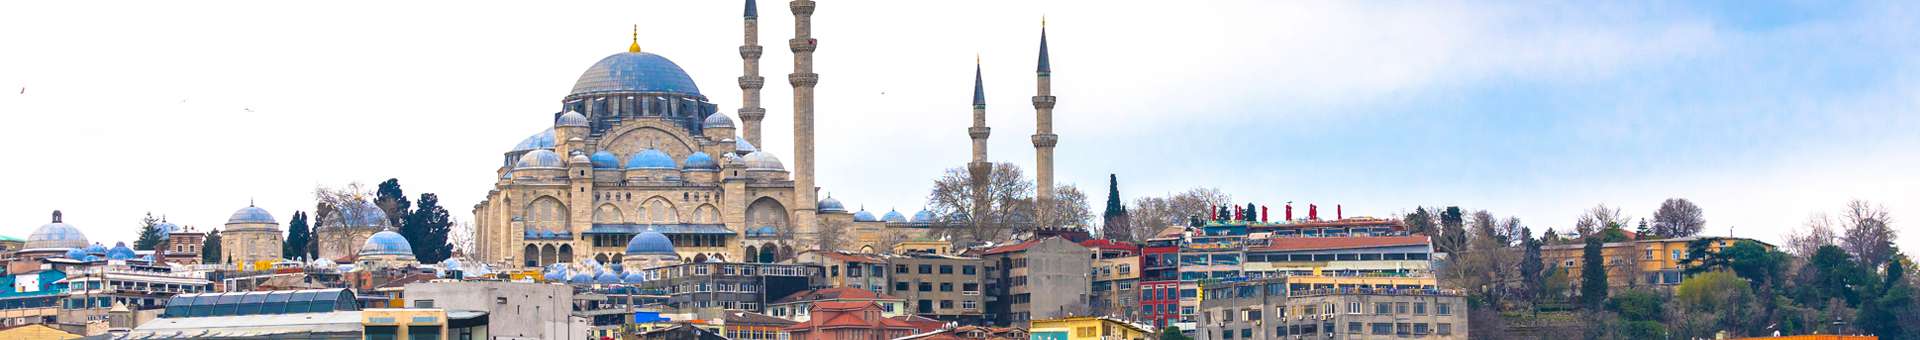 Búsqueda de información Whois de nombres de dominios en Turquía